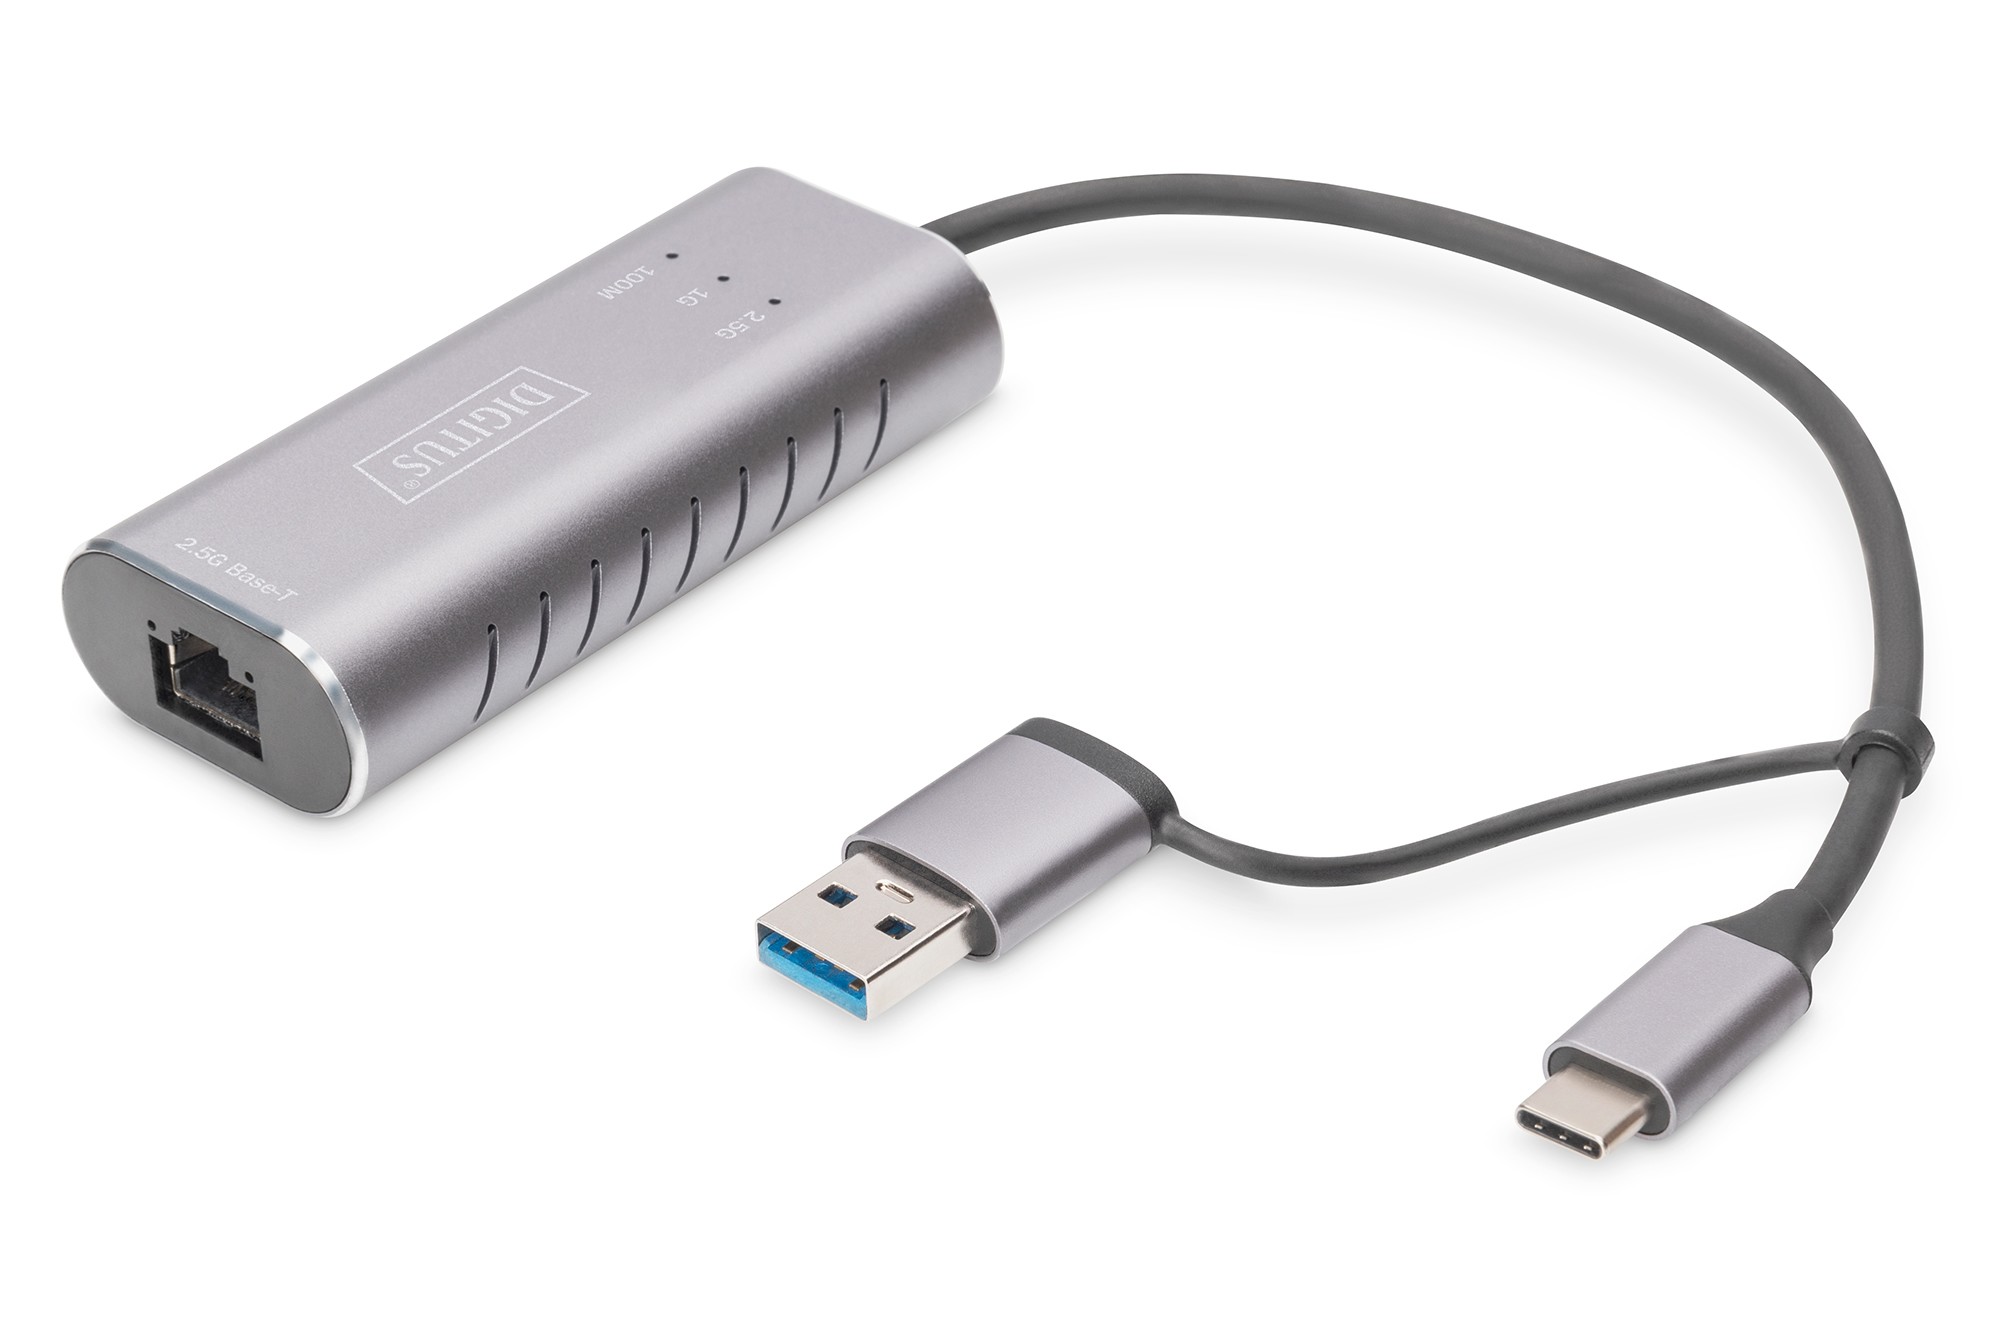 DN-3028  Adaptador de Red USB 3.0 Gigabit 2,5Gbit/s USB-C + USB A (USB3.1/3.0)  Plata Digitus